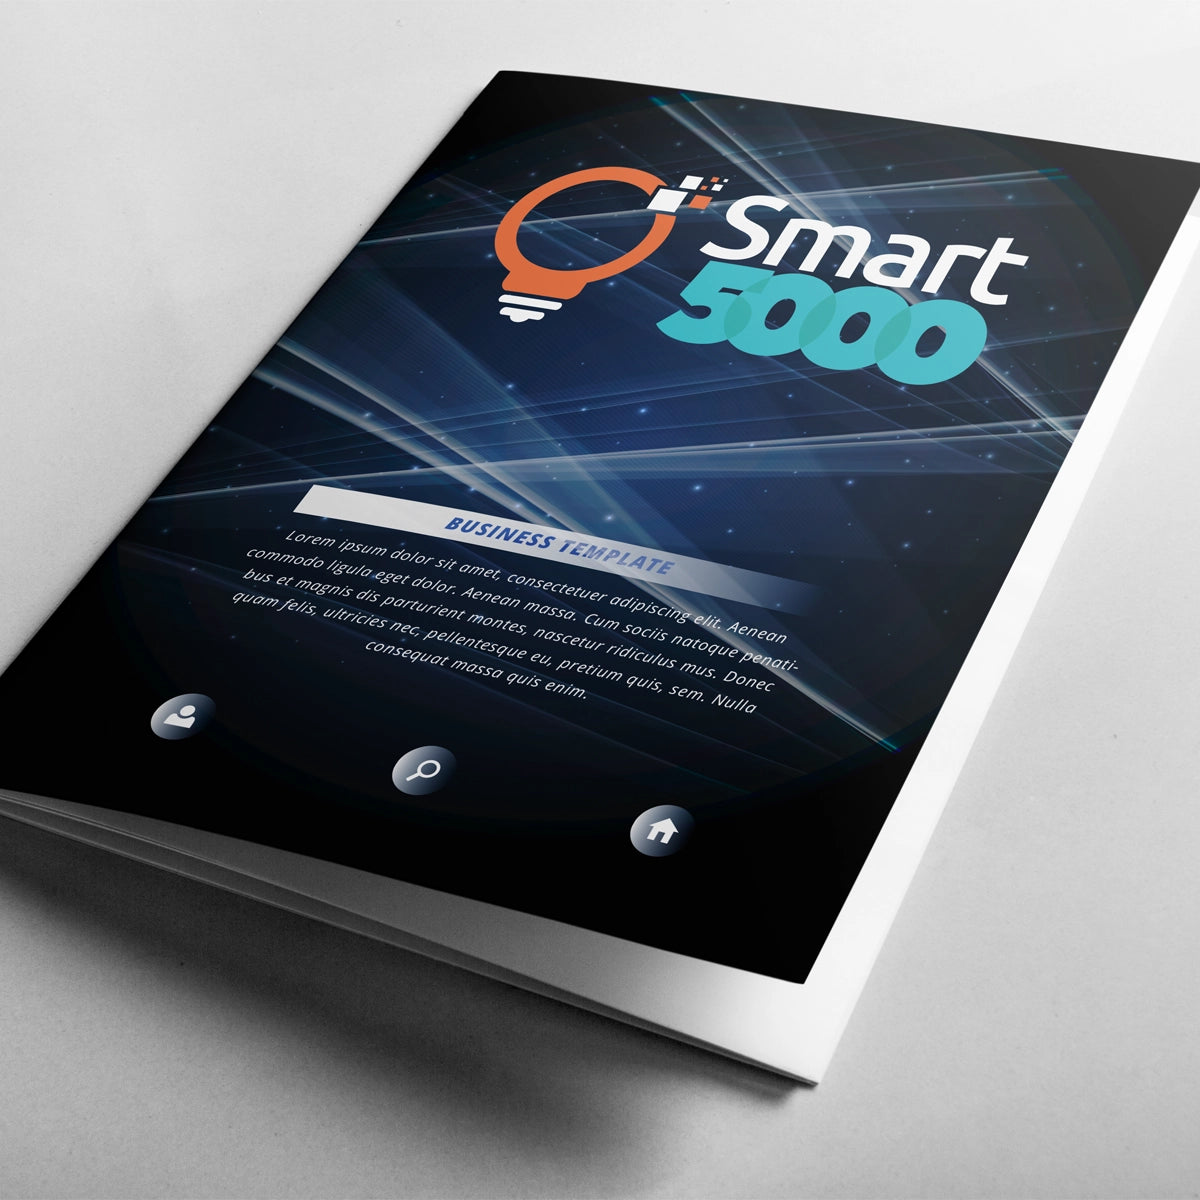 smart5000.com